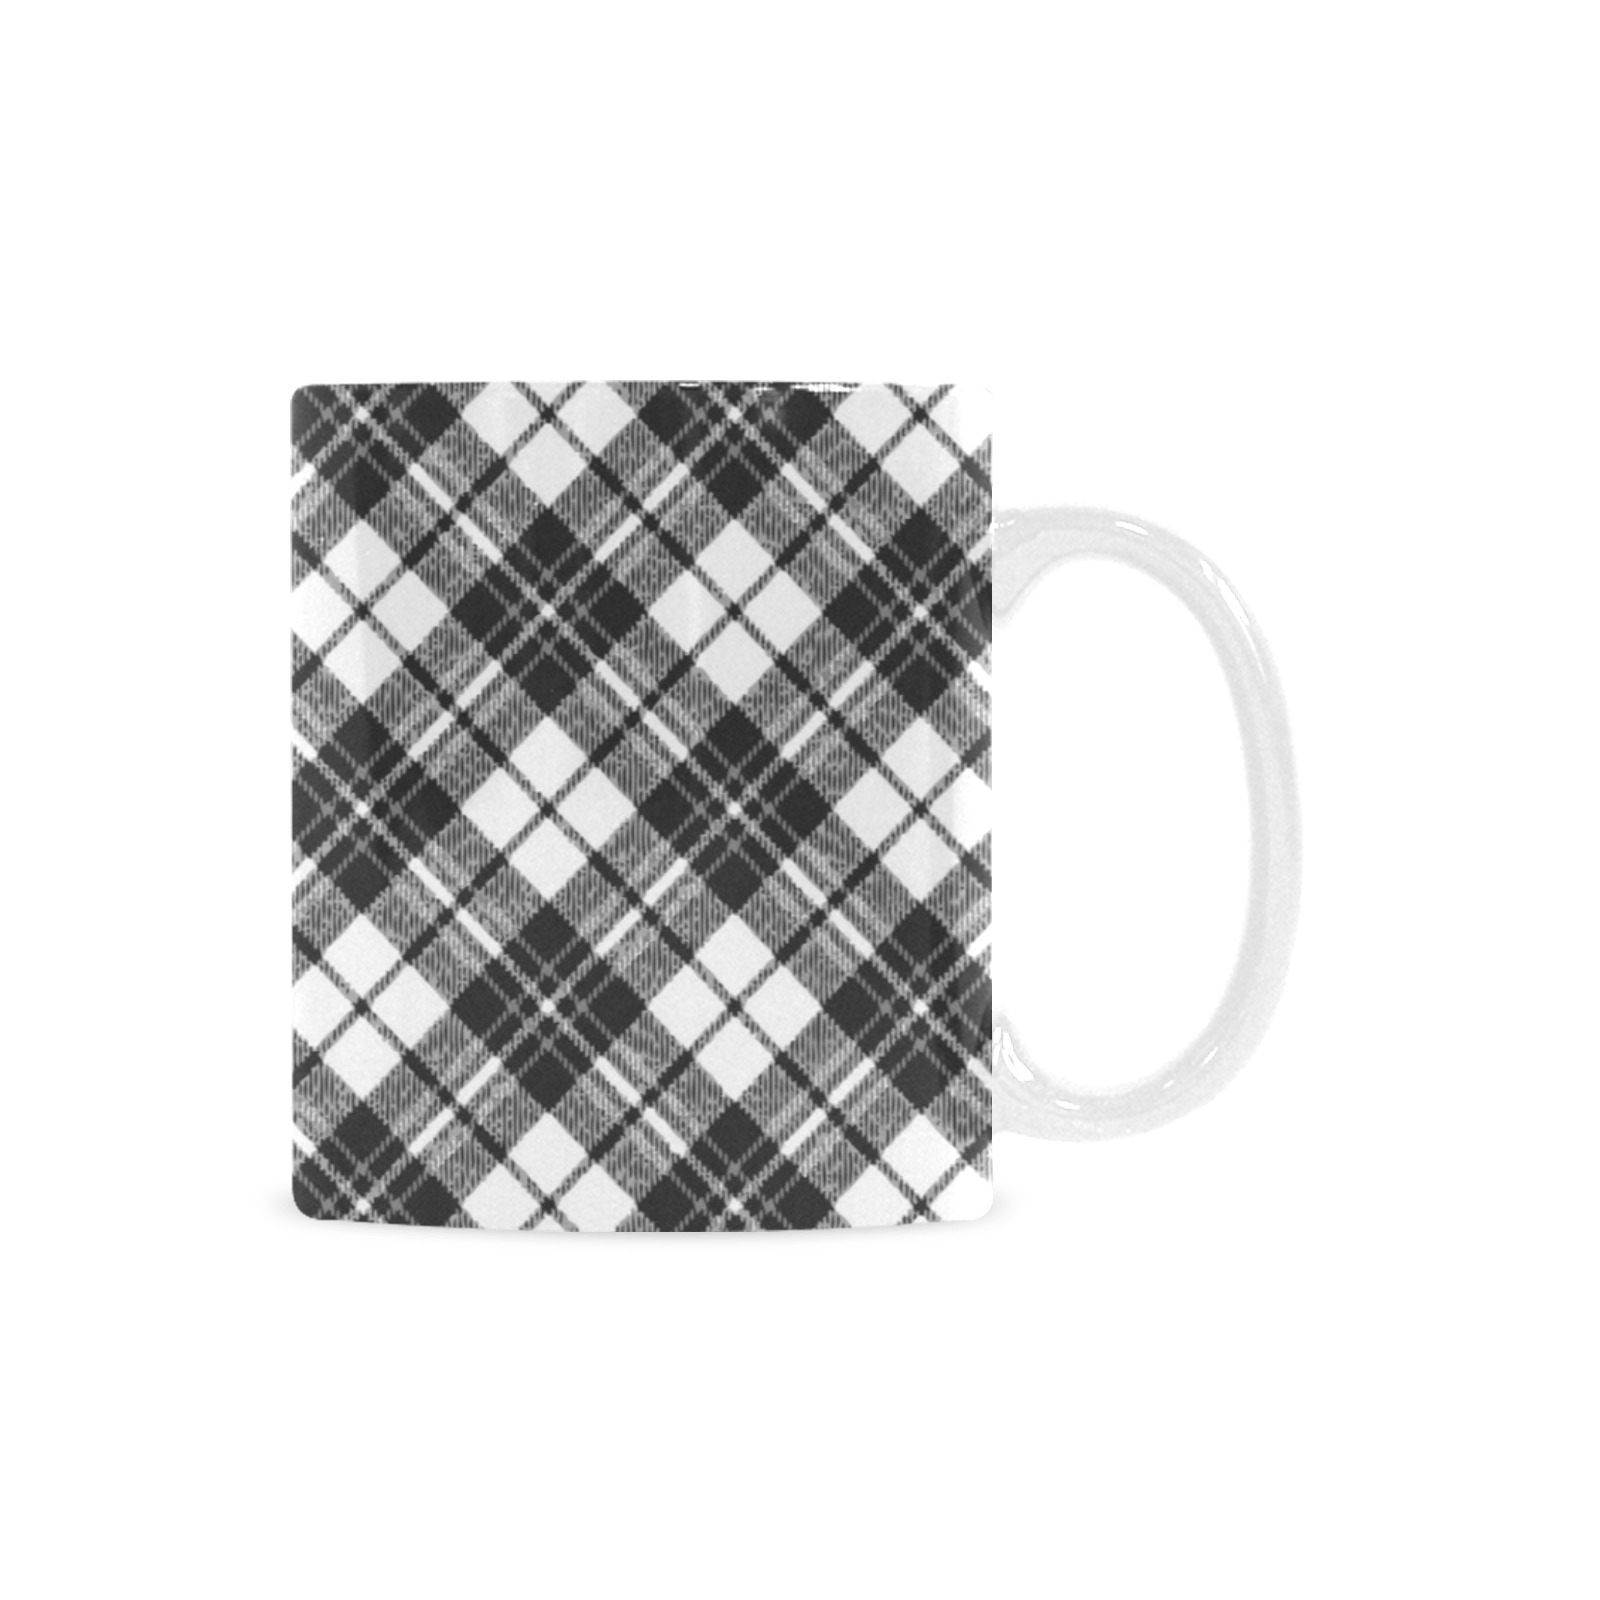 Tartan black white pattern holidays Christmas xmas elegant lines geometric cool fun classic elegance Custom White Mug (11oz)